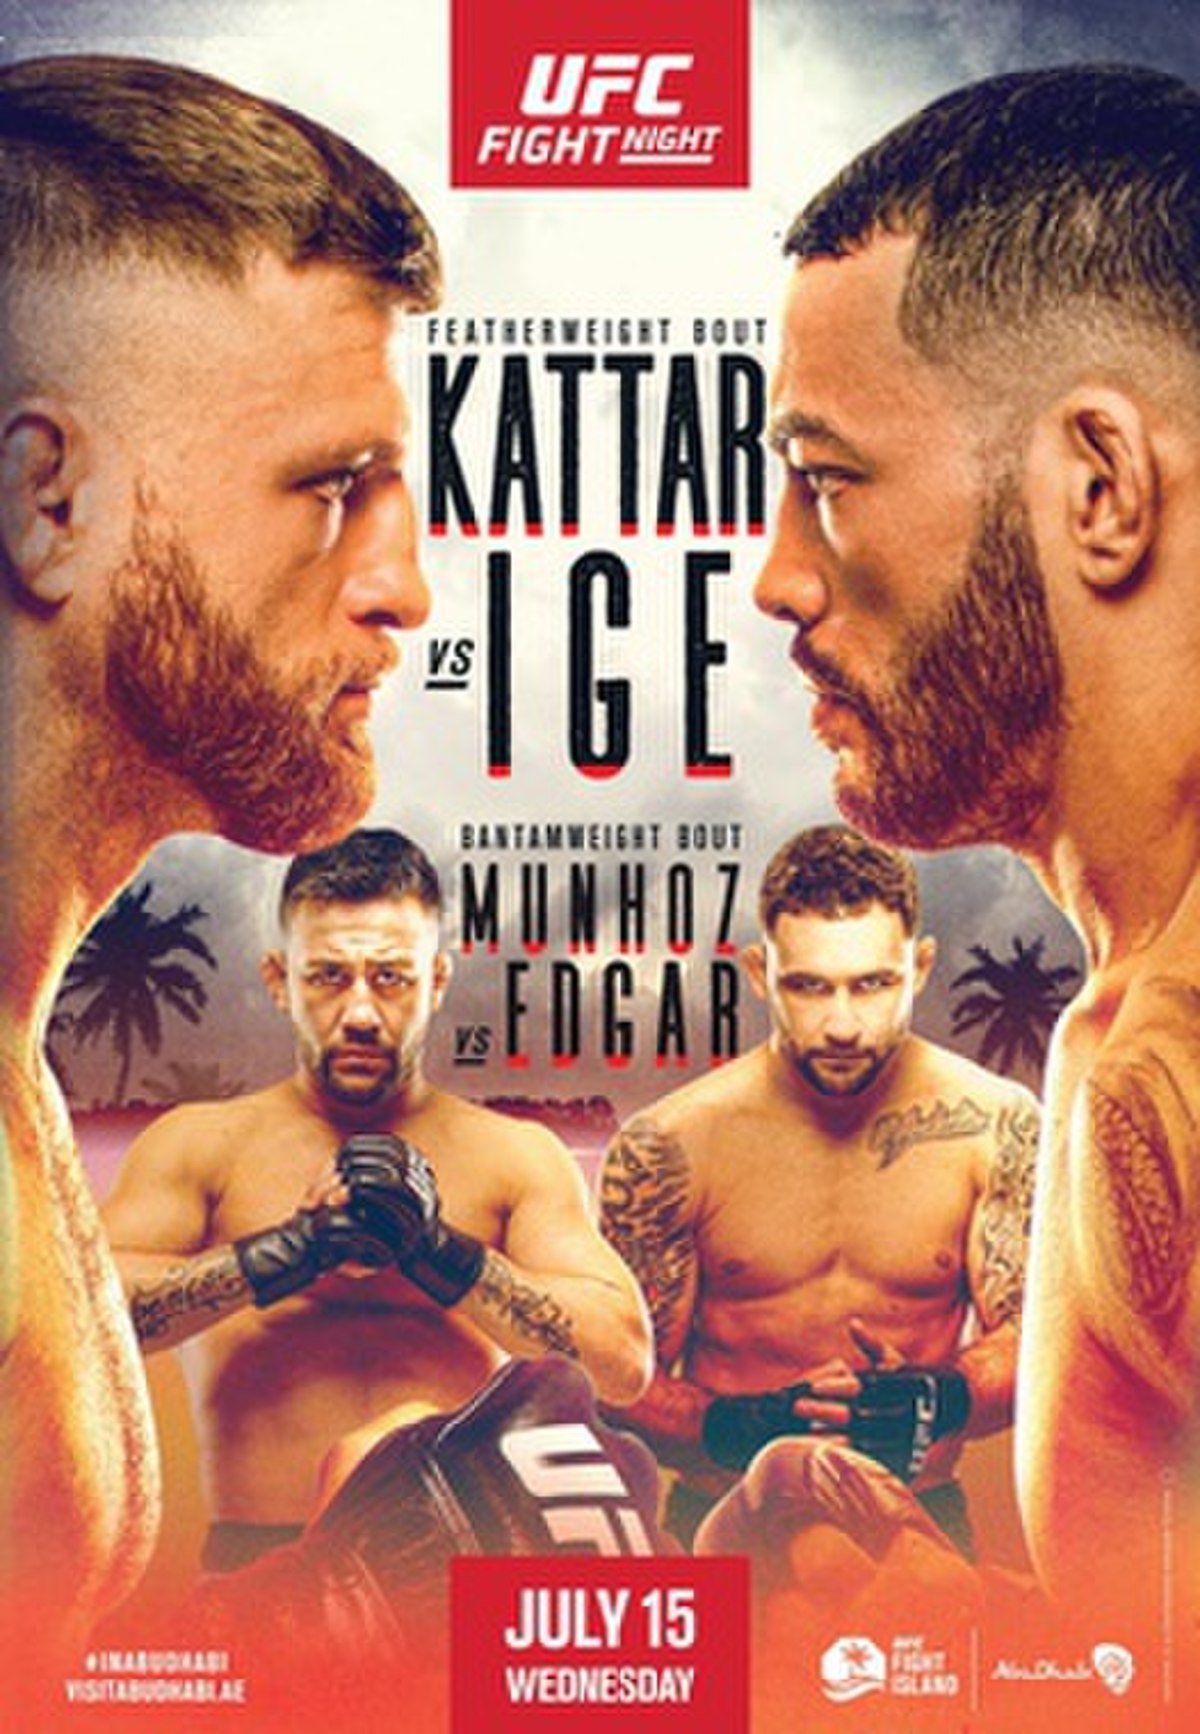 UFC Fight Night: Kattar vs. Ige - Wikipedia